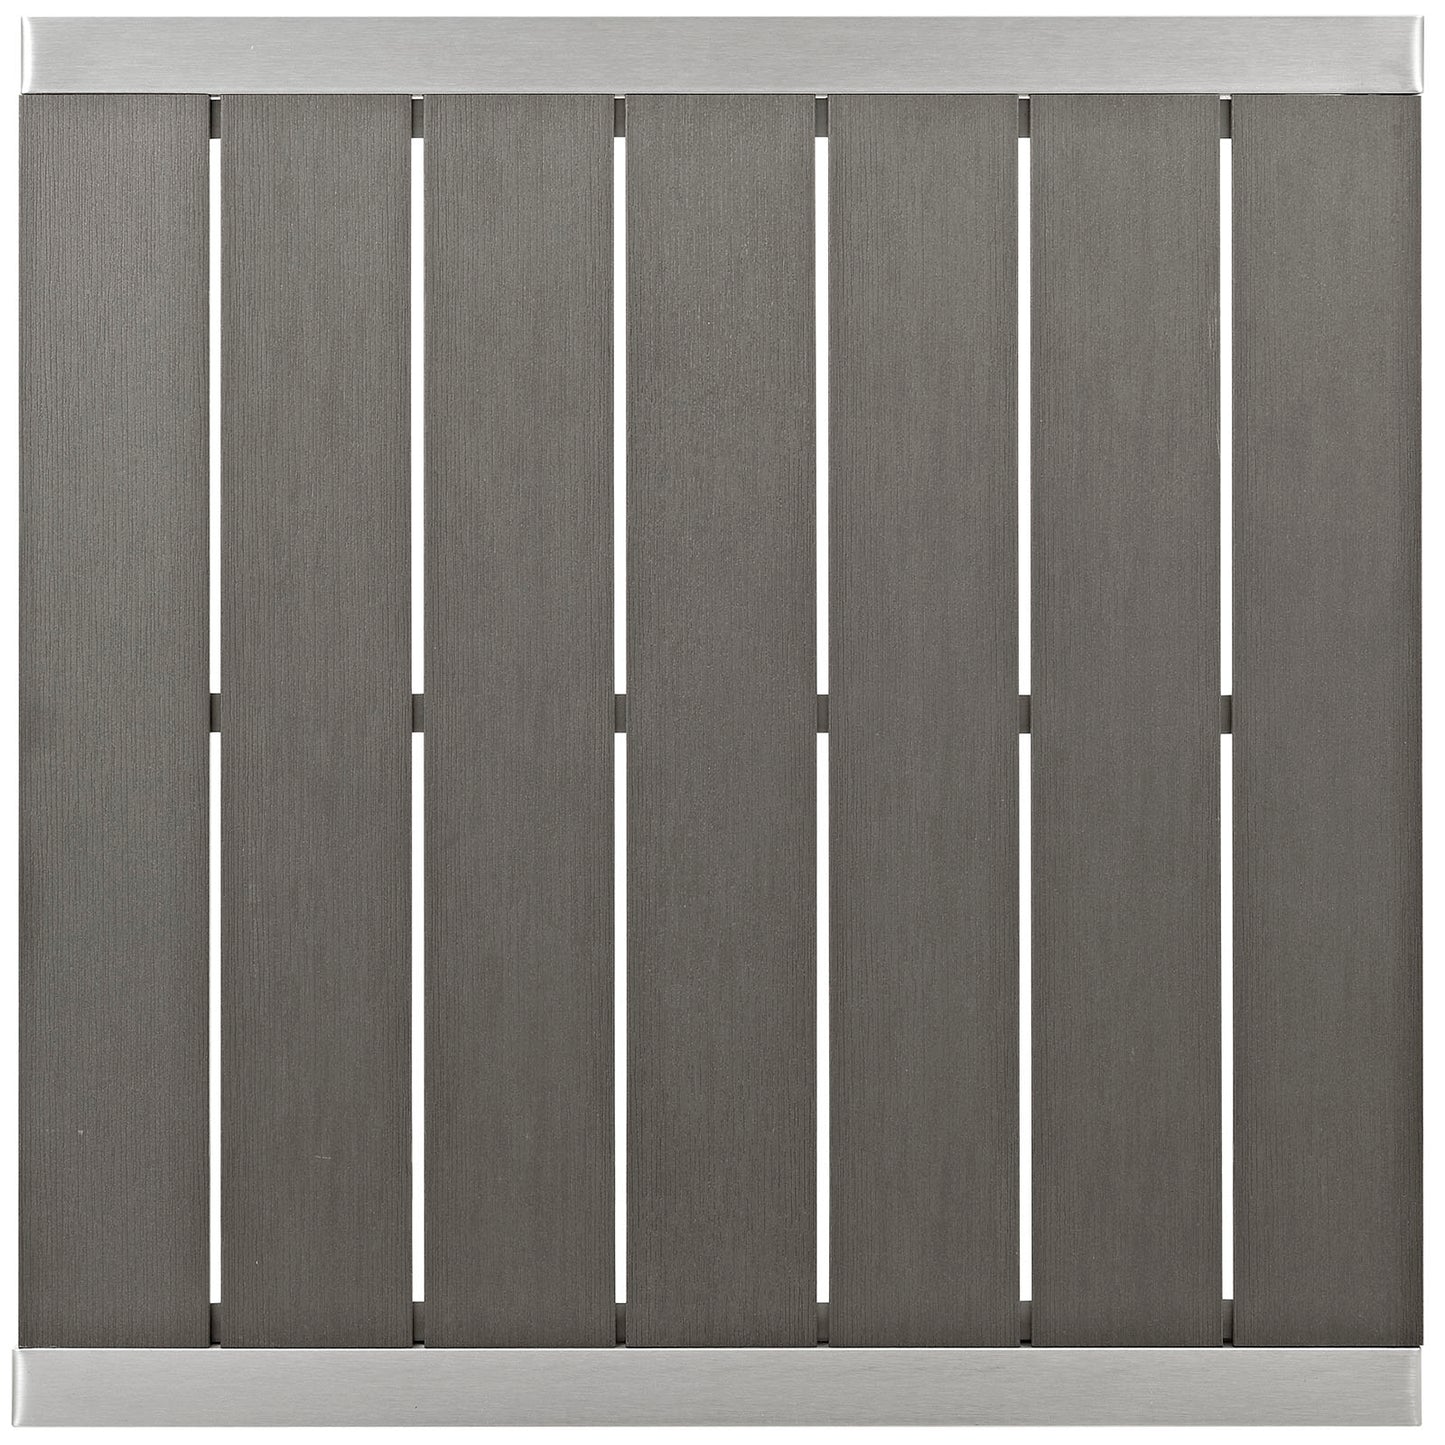 Modway Shore Outdoor Patio Aluminum Bar Table - Silver Gray | Bar Table | Modishstore-3